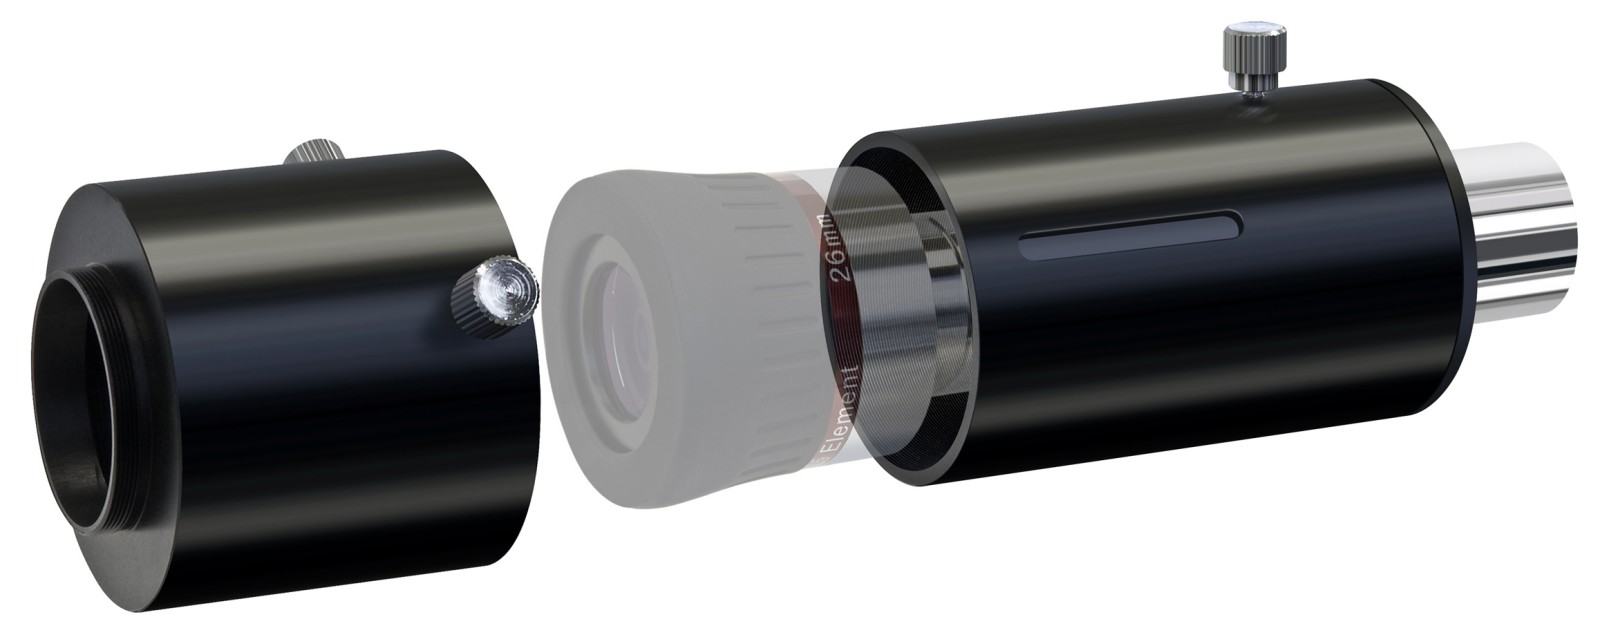 TS-Optics Foto Adapter Kameraadapter 1,25 f/ür Okularprojektion und Fokalfotografie 3 in 1 f/ür Teleskope TSPA1 zweiteilig T2 auf 1,25 und T2 auf T2